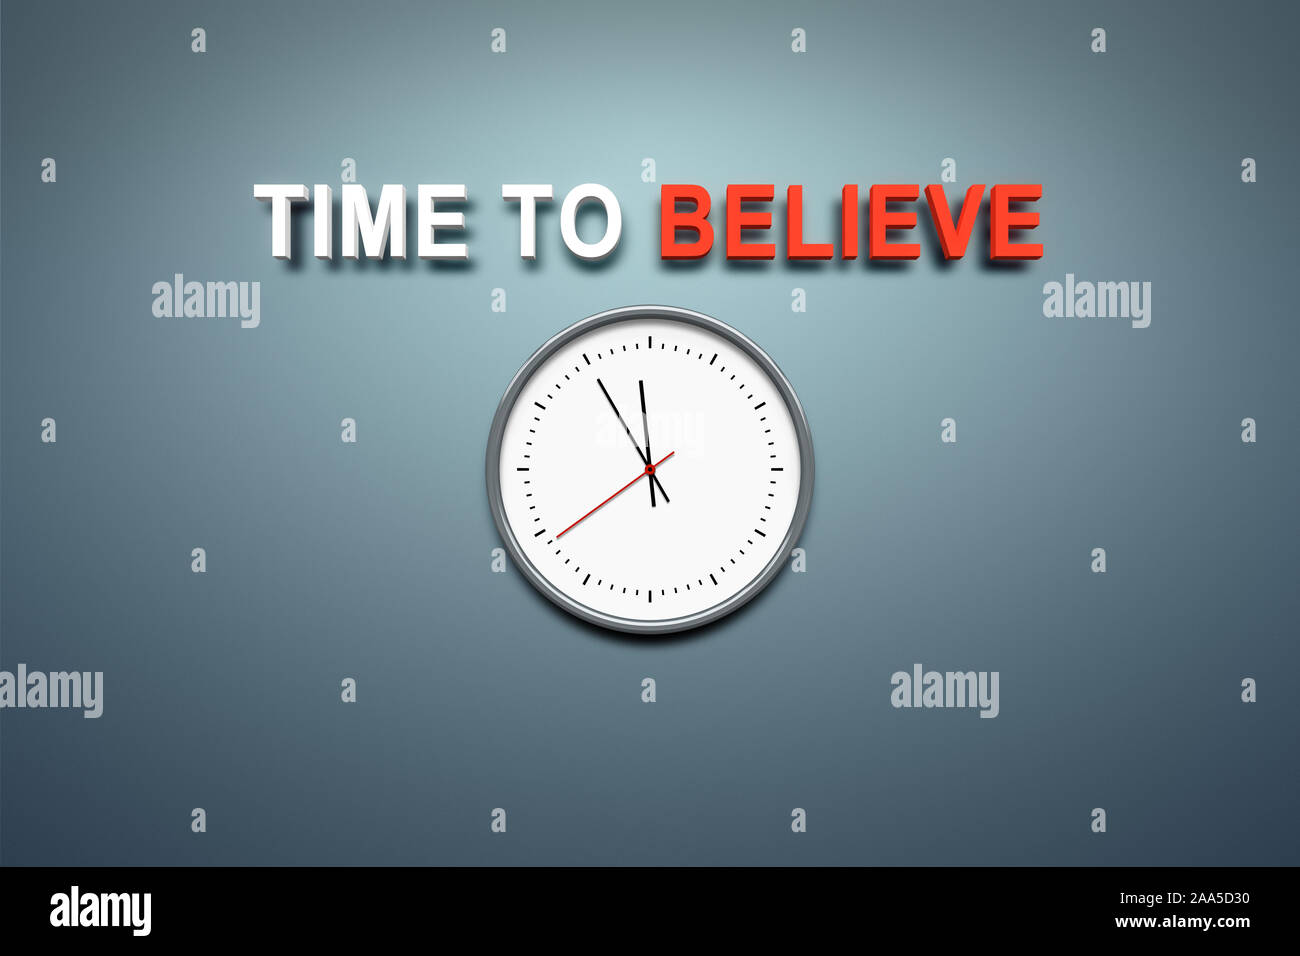 Eine simple Uhr vor grauem Hintergrund, ueber der die Worte 'Time to Believe' stehen Stock Photo